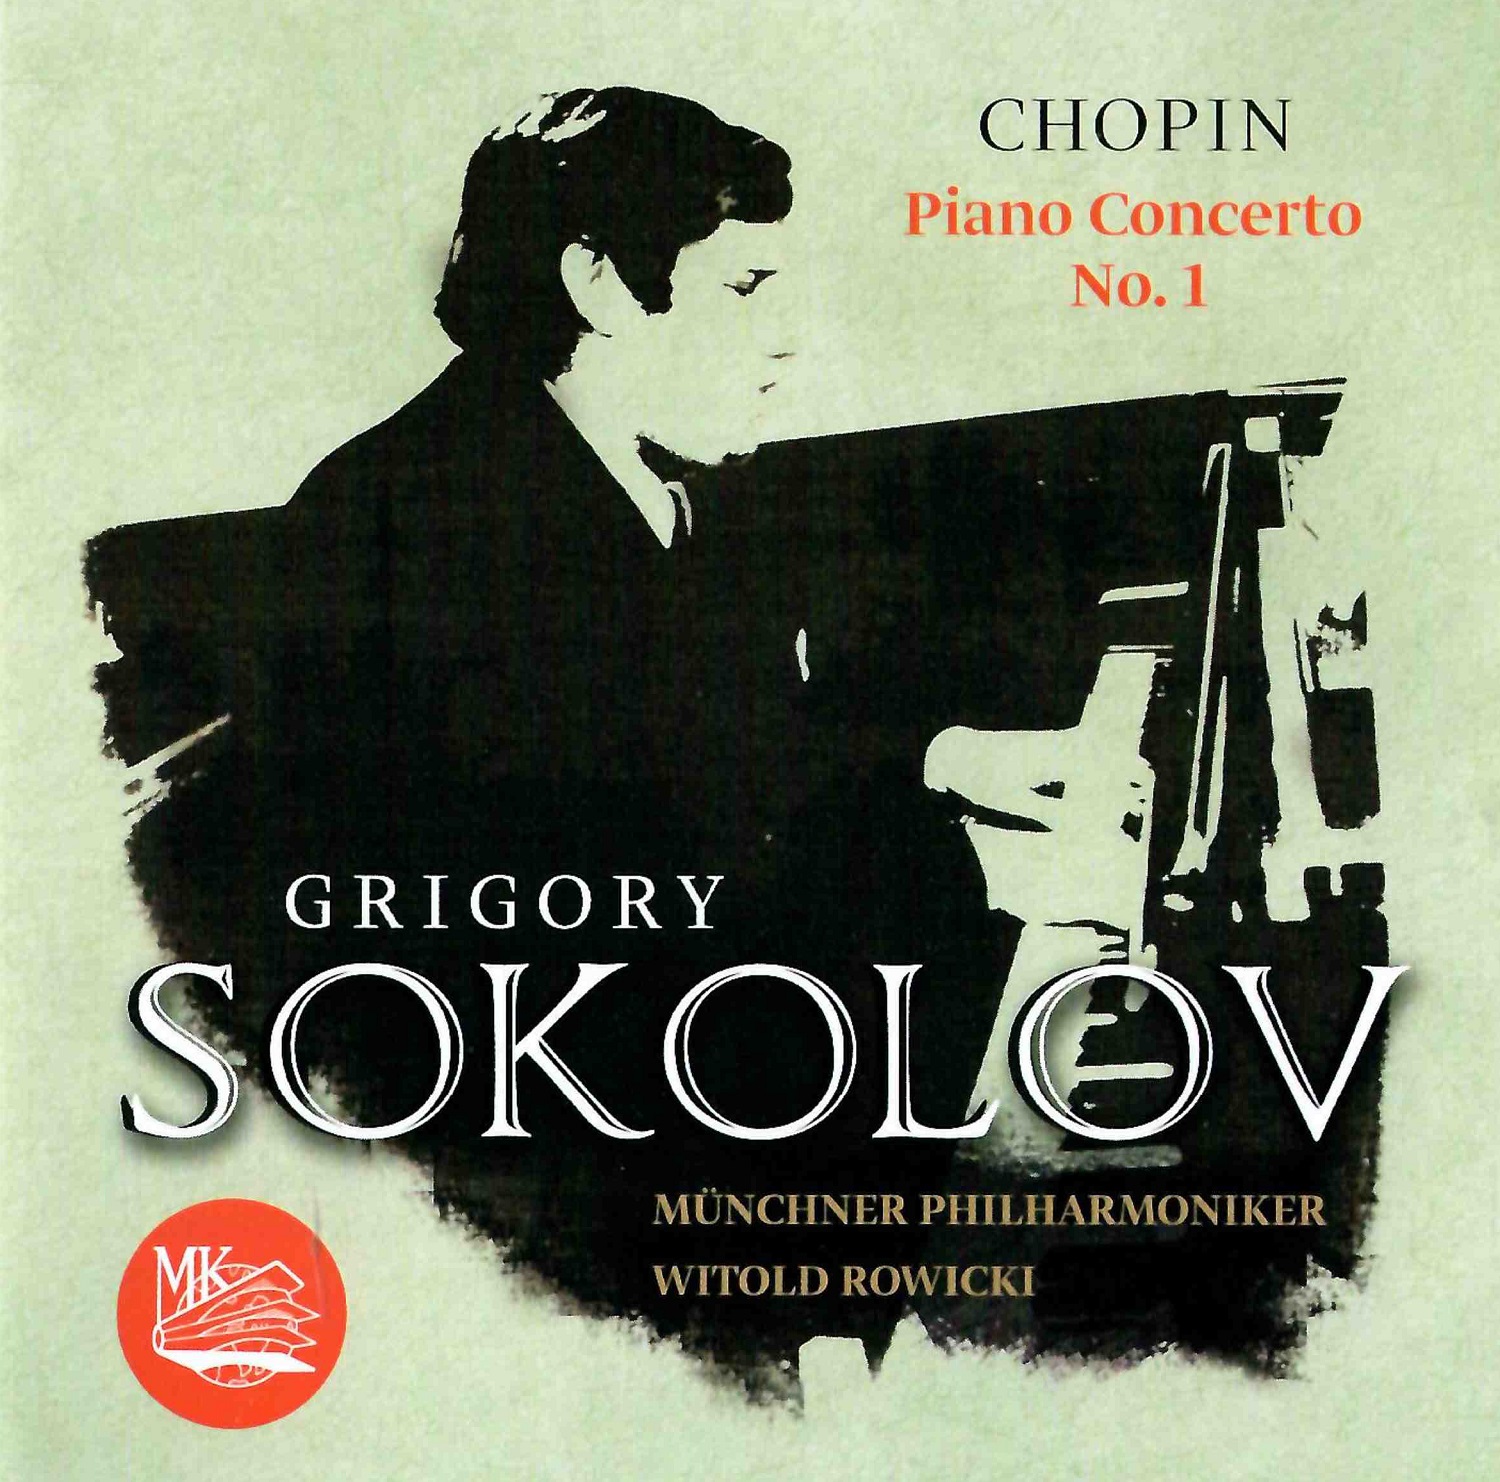 Григорий Соколов - Шопен: Фортепианный концерт № 1